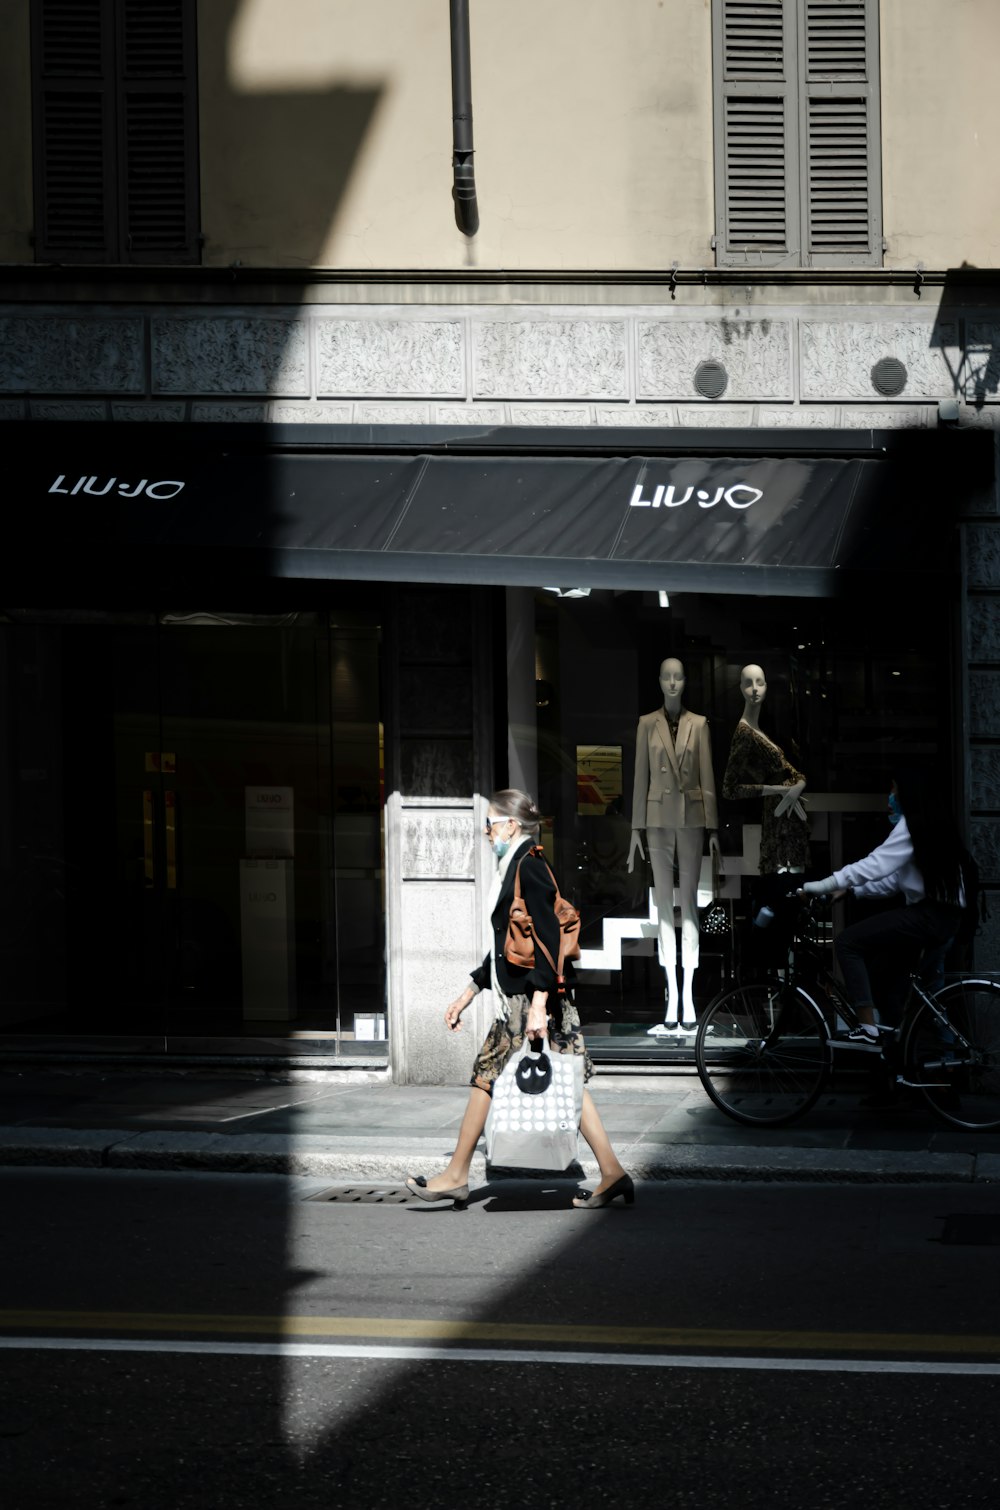 Mann in schwarz-weiß kariertem Hemd und schwarzer Hose, der tagsüber auf dem Bürgersteig spazieren geht